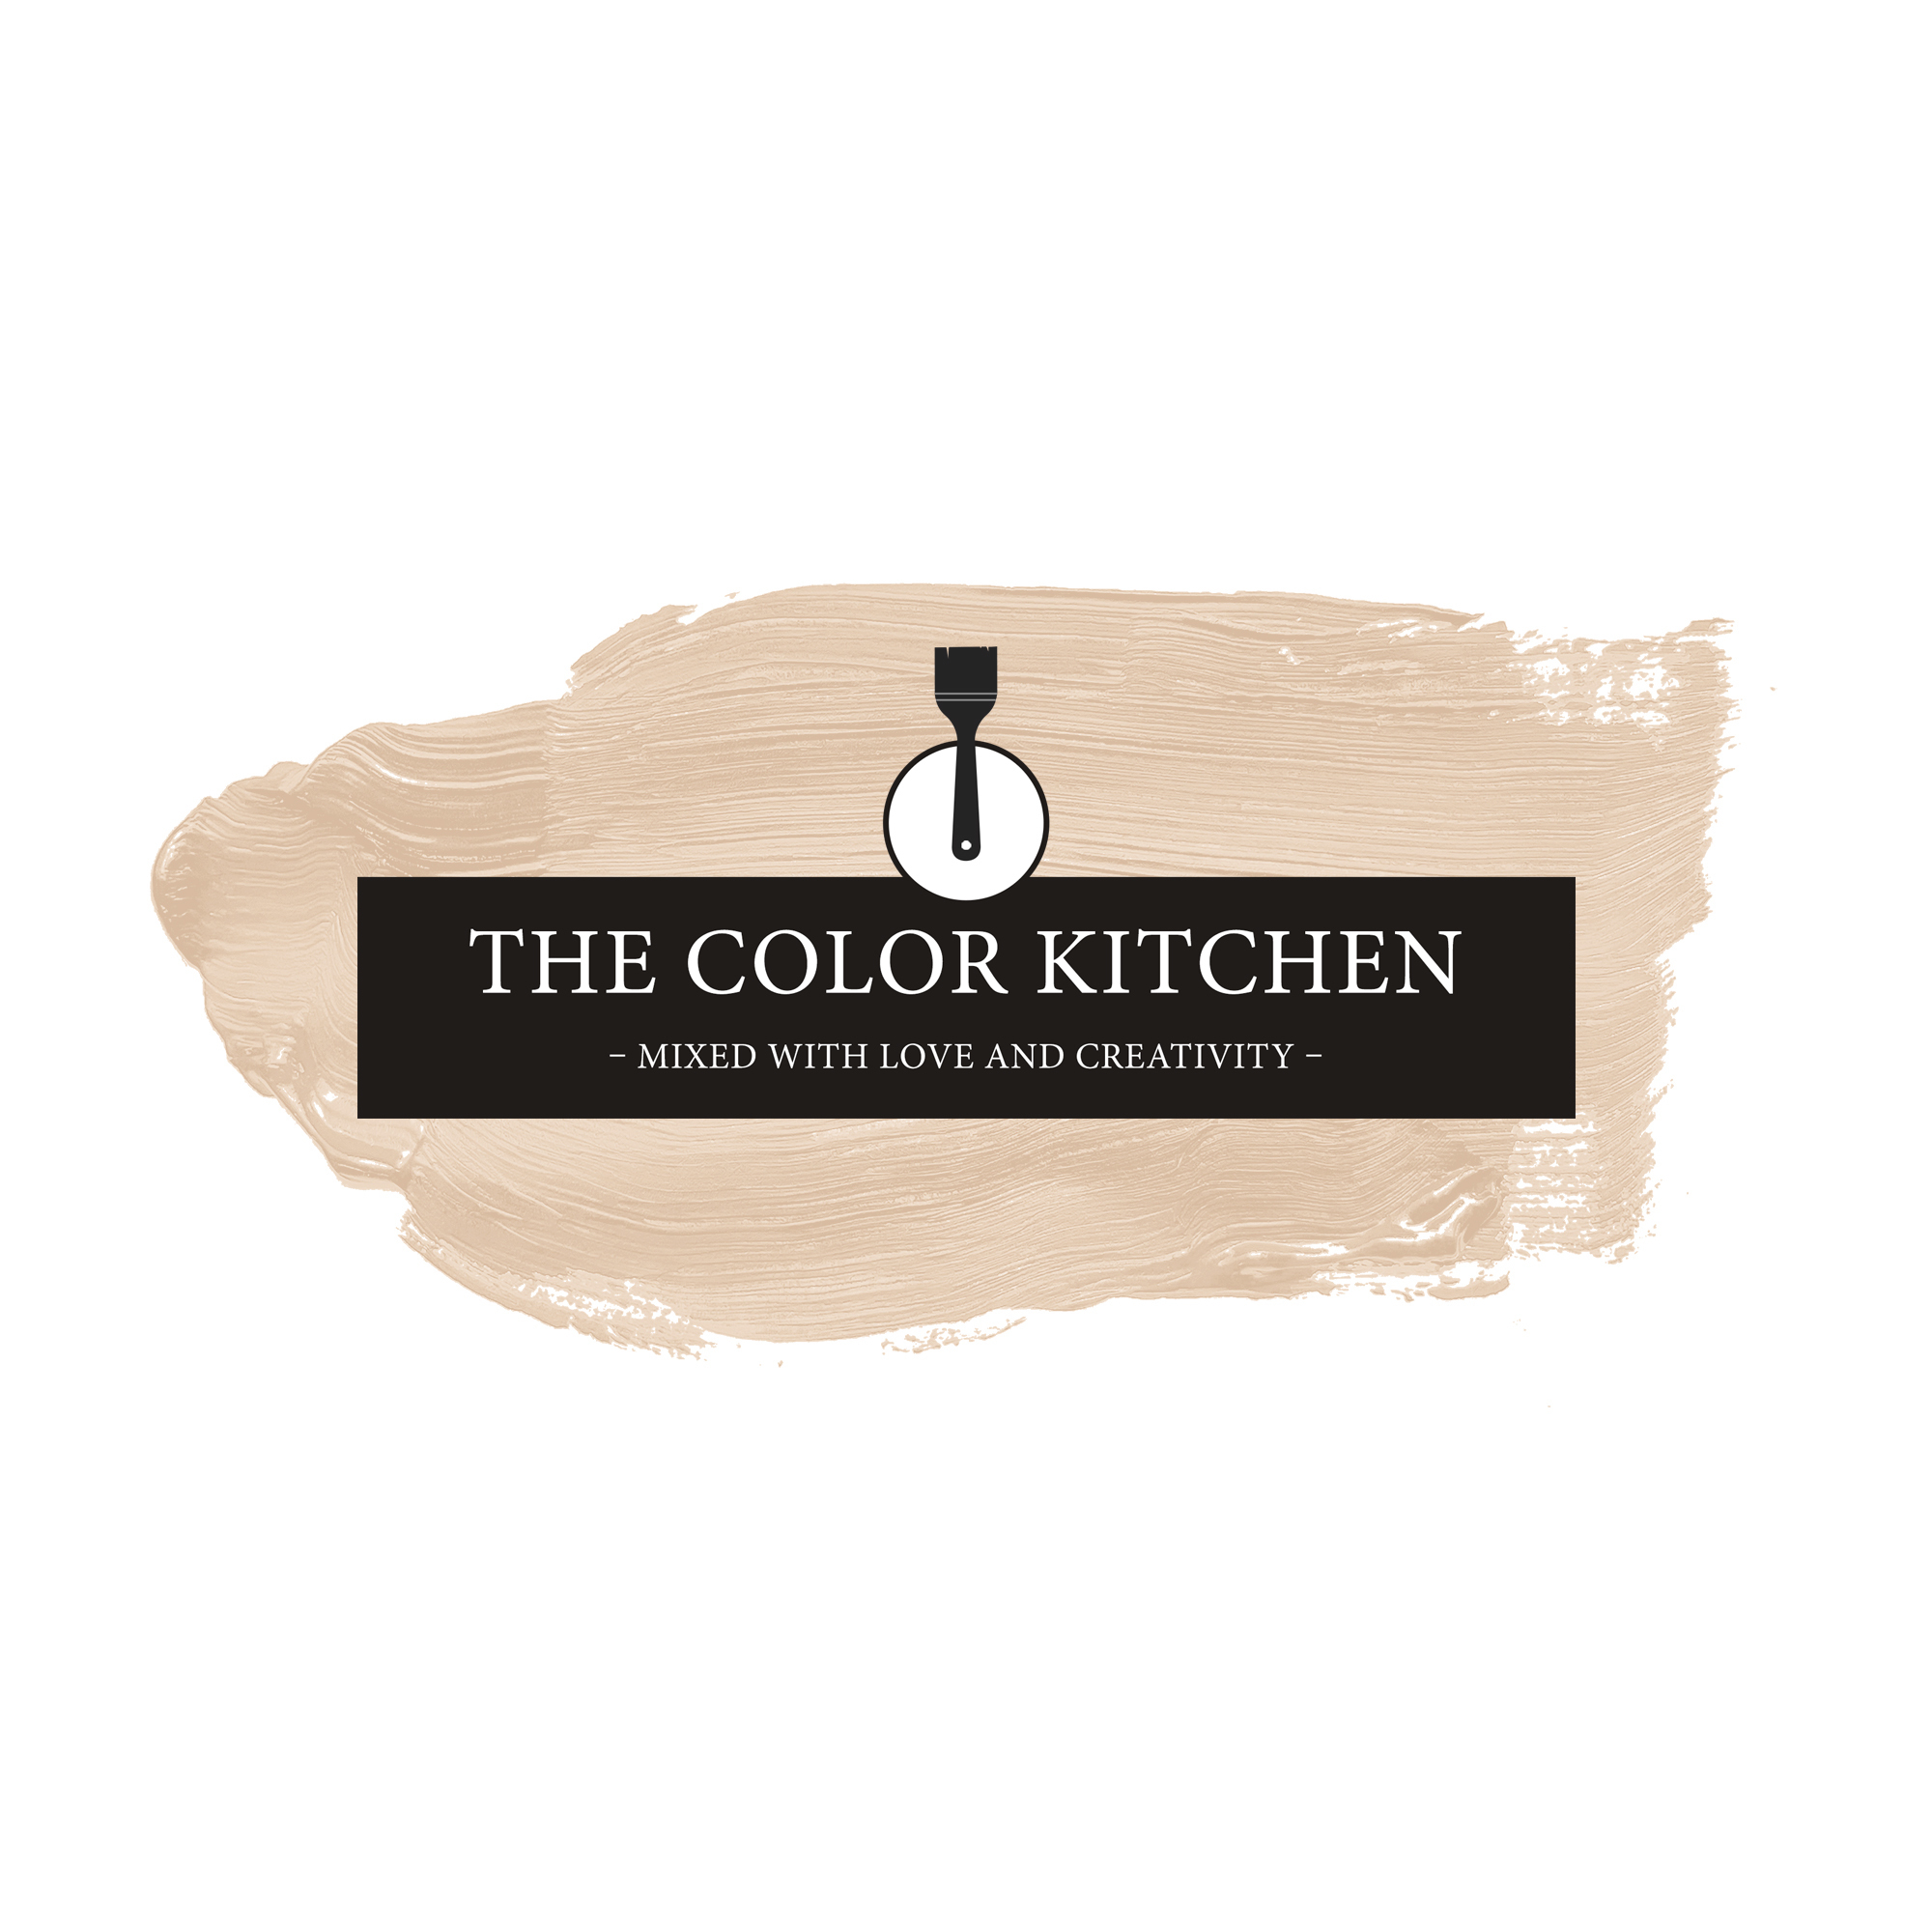 The Color Kitchen Pure Pampas 5 l